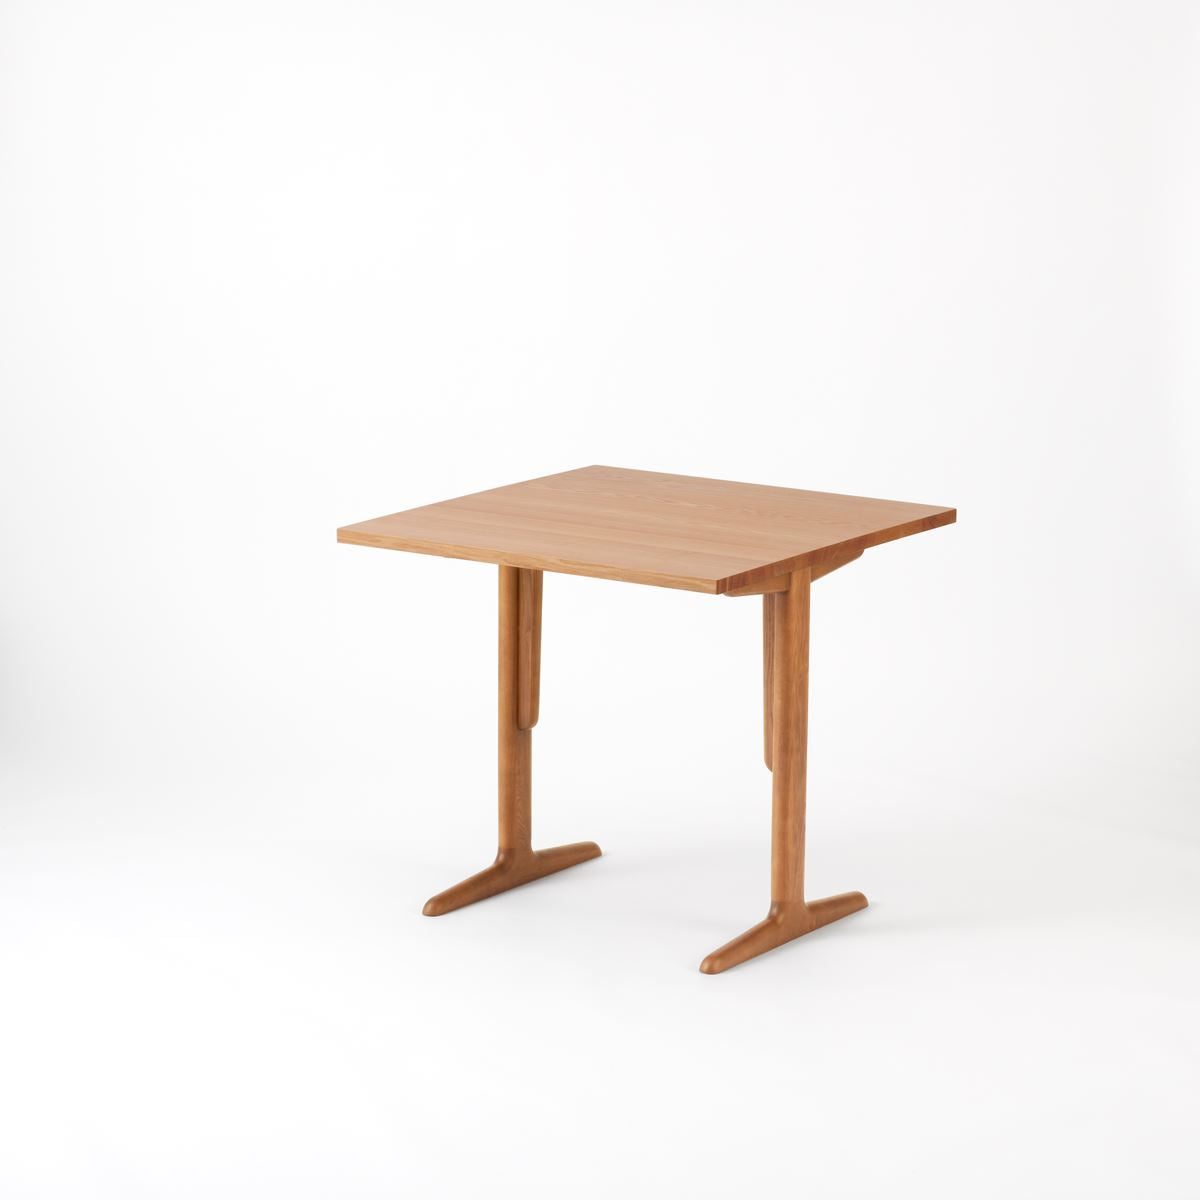 KUUM  Table W800 × D800 - アッシュ無垢材ナチュラル / クーム テーブル